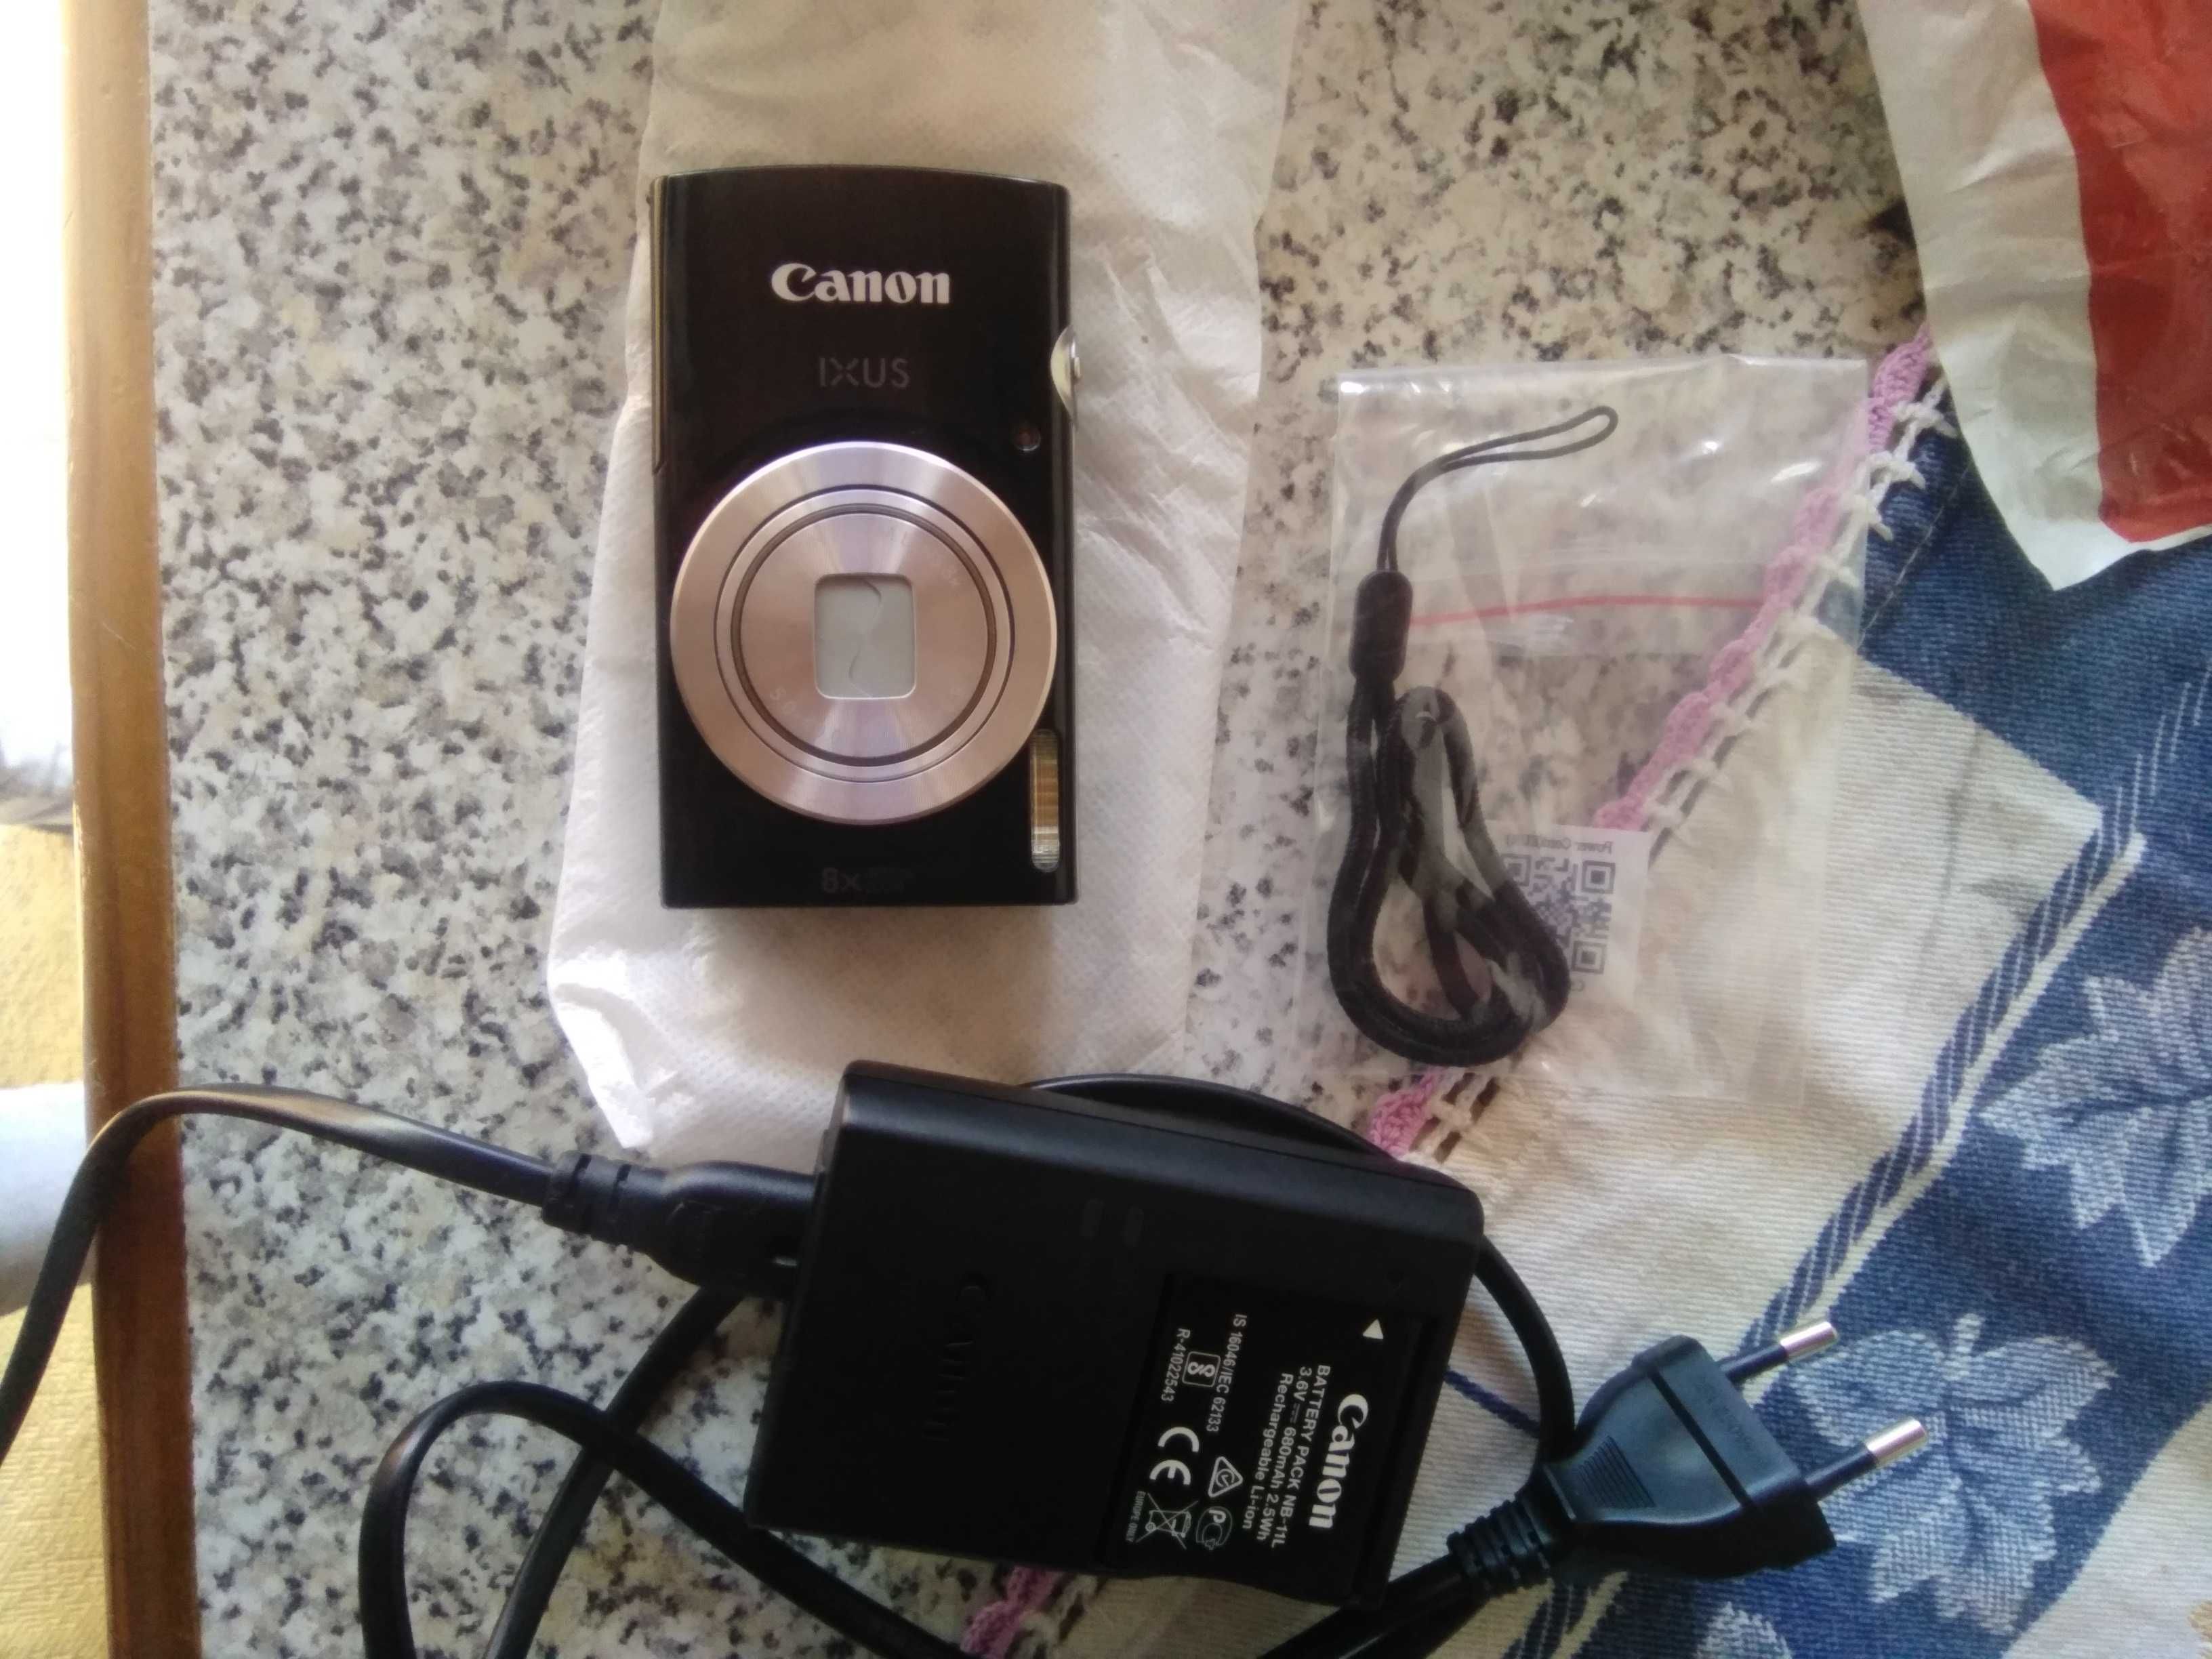 Máquina fotográfica Canon Ixus nova com garantia. Nunca usada